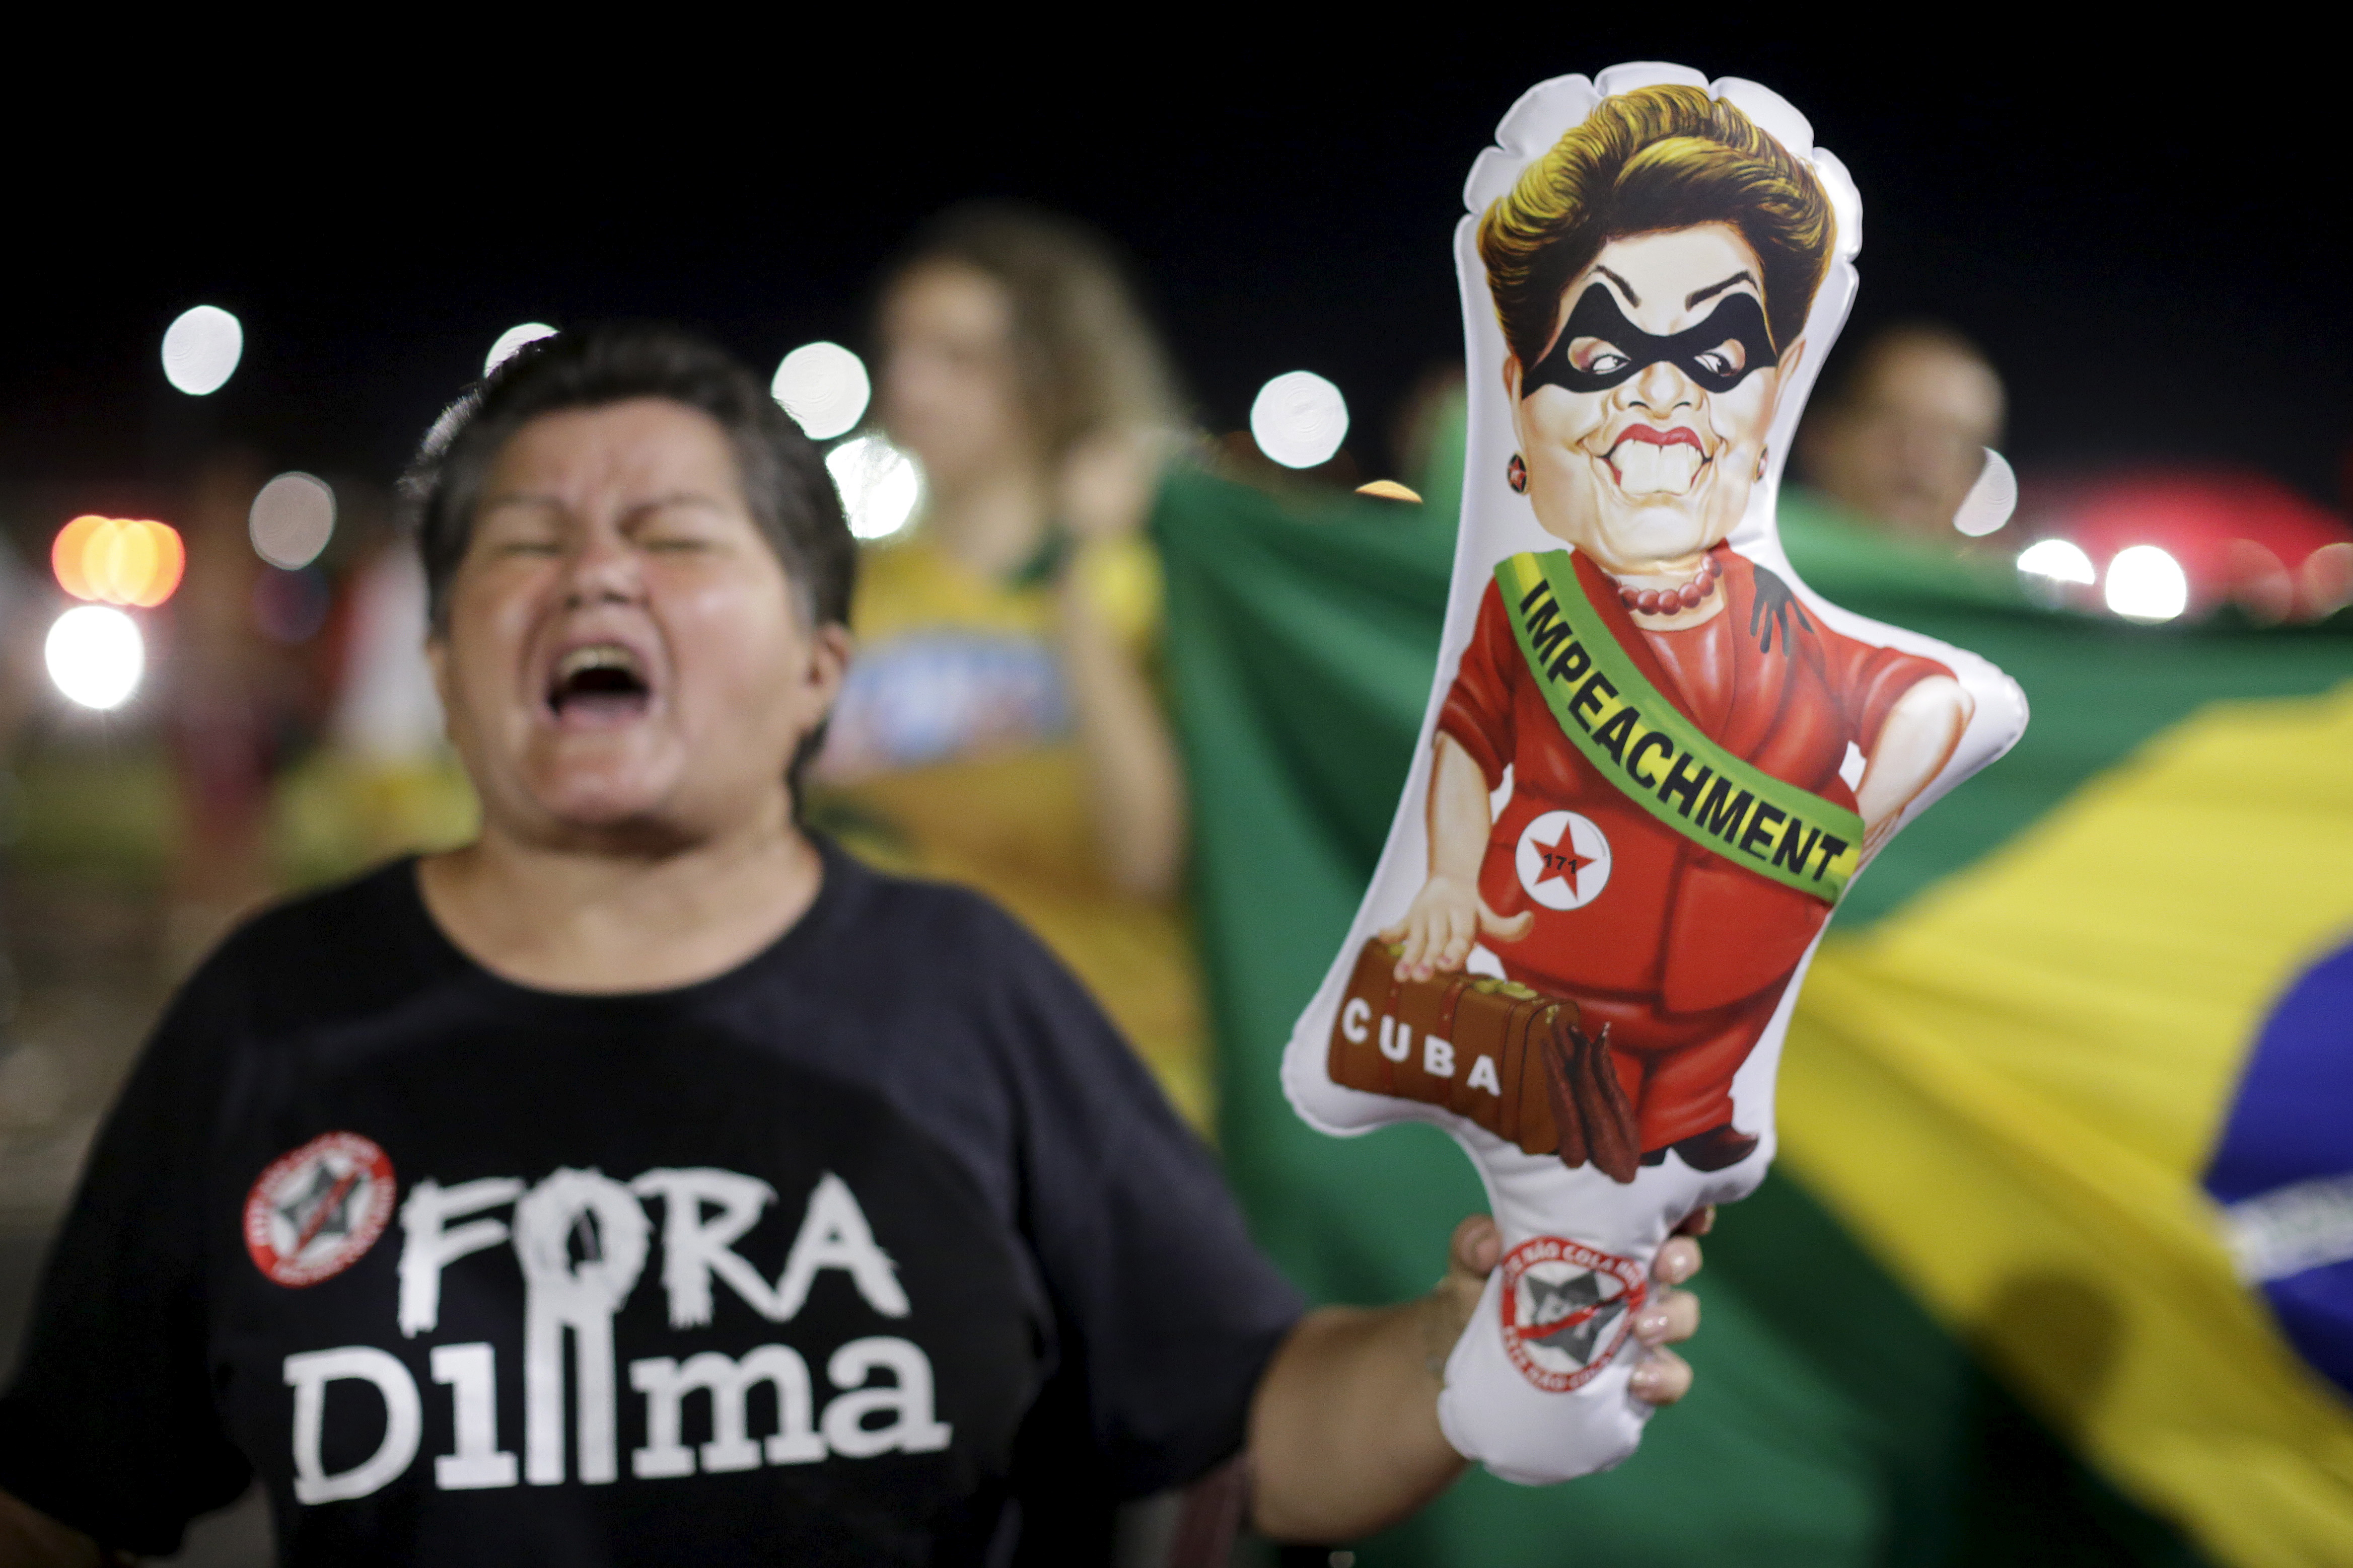  Salida de Dilma no solucionará la crisis